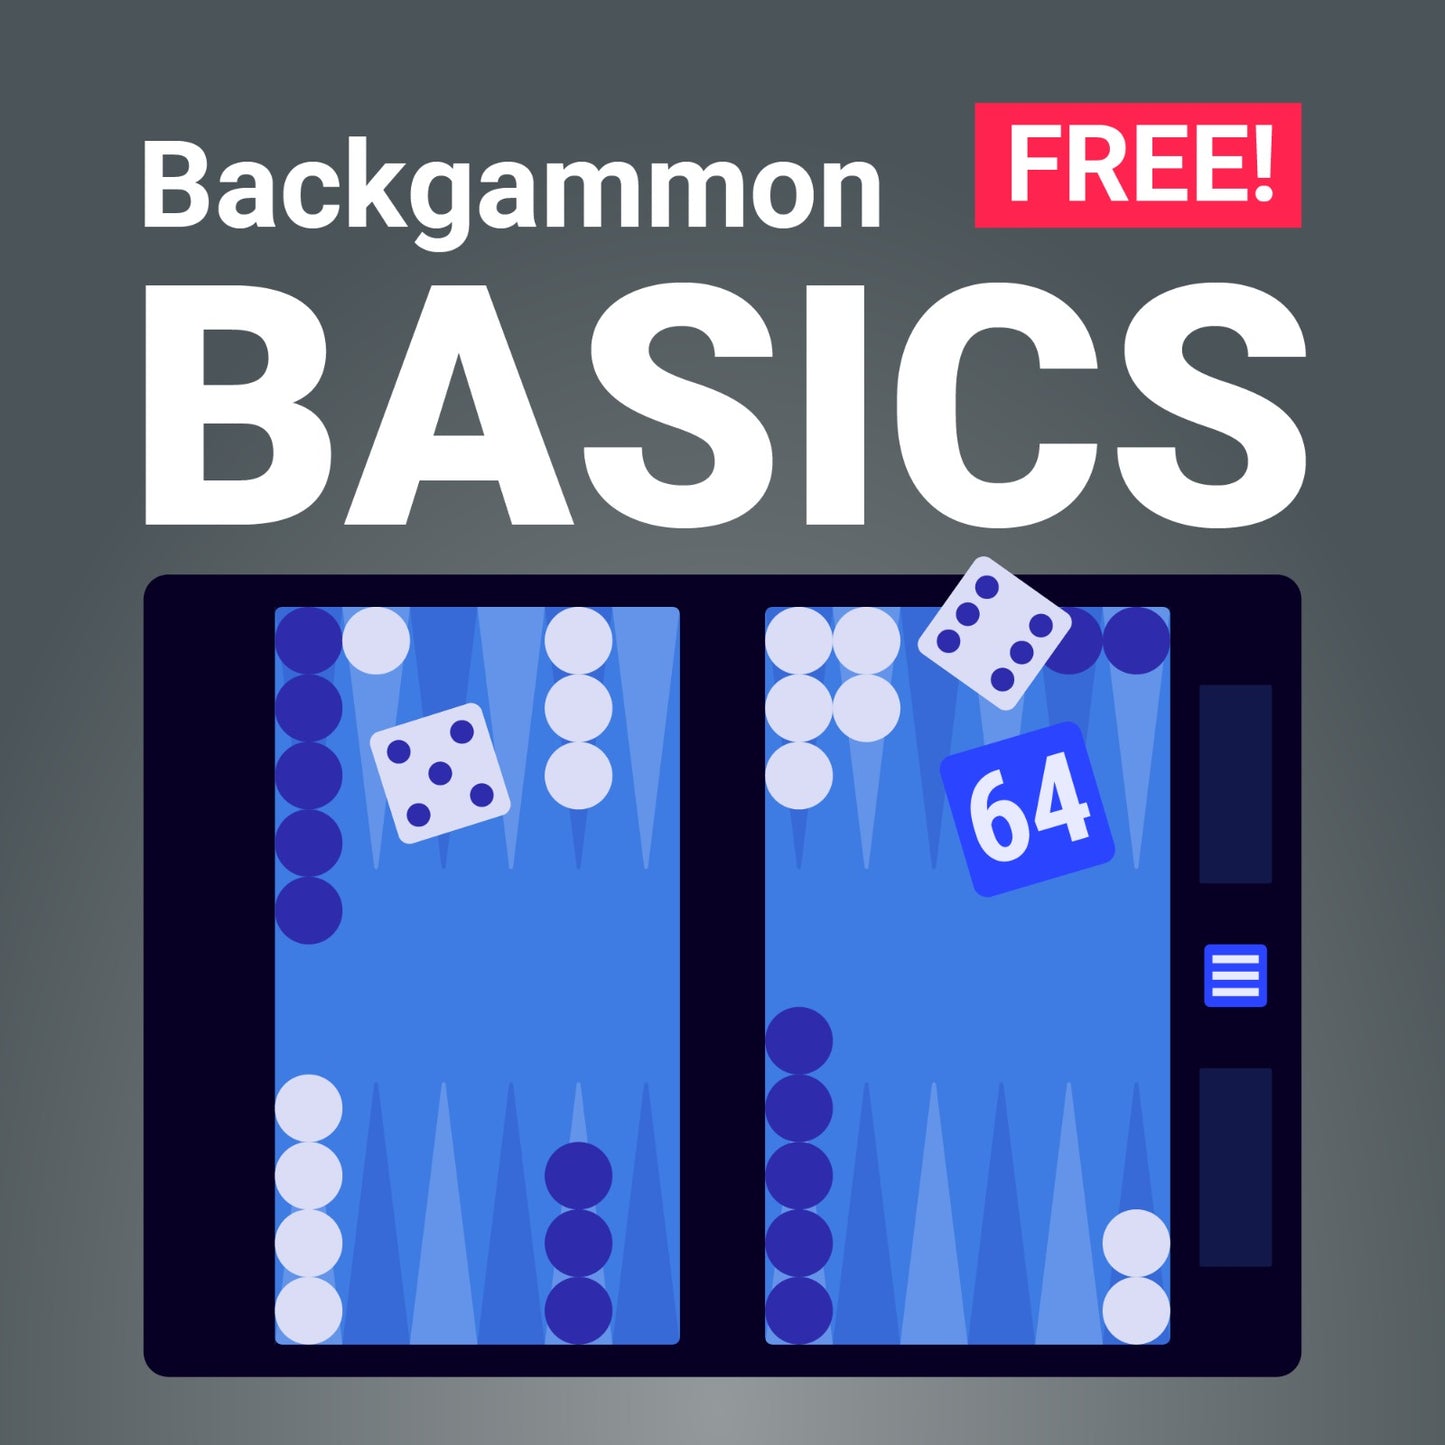 Backgammon Basics Course [FREE]